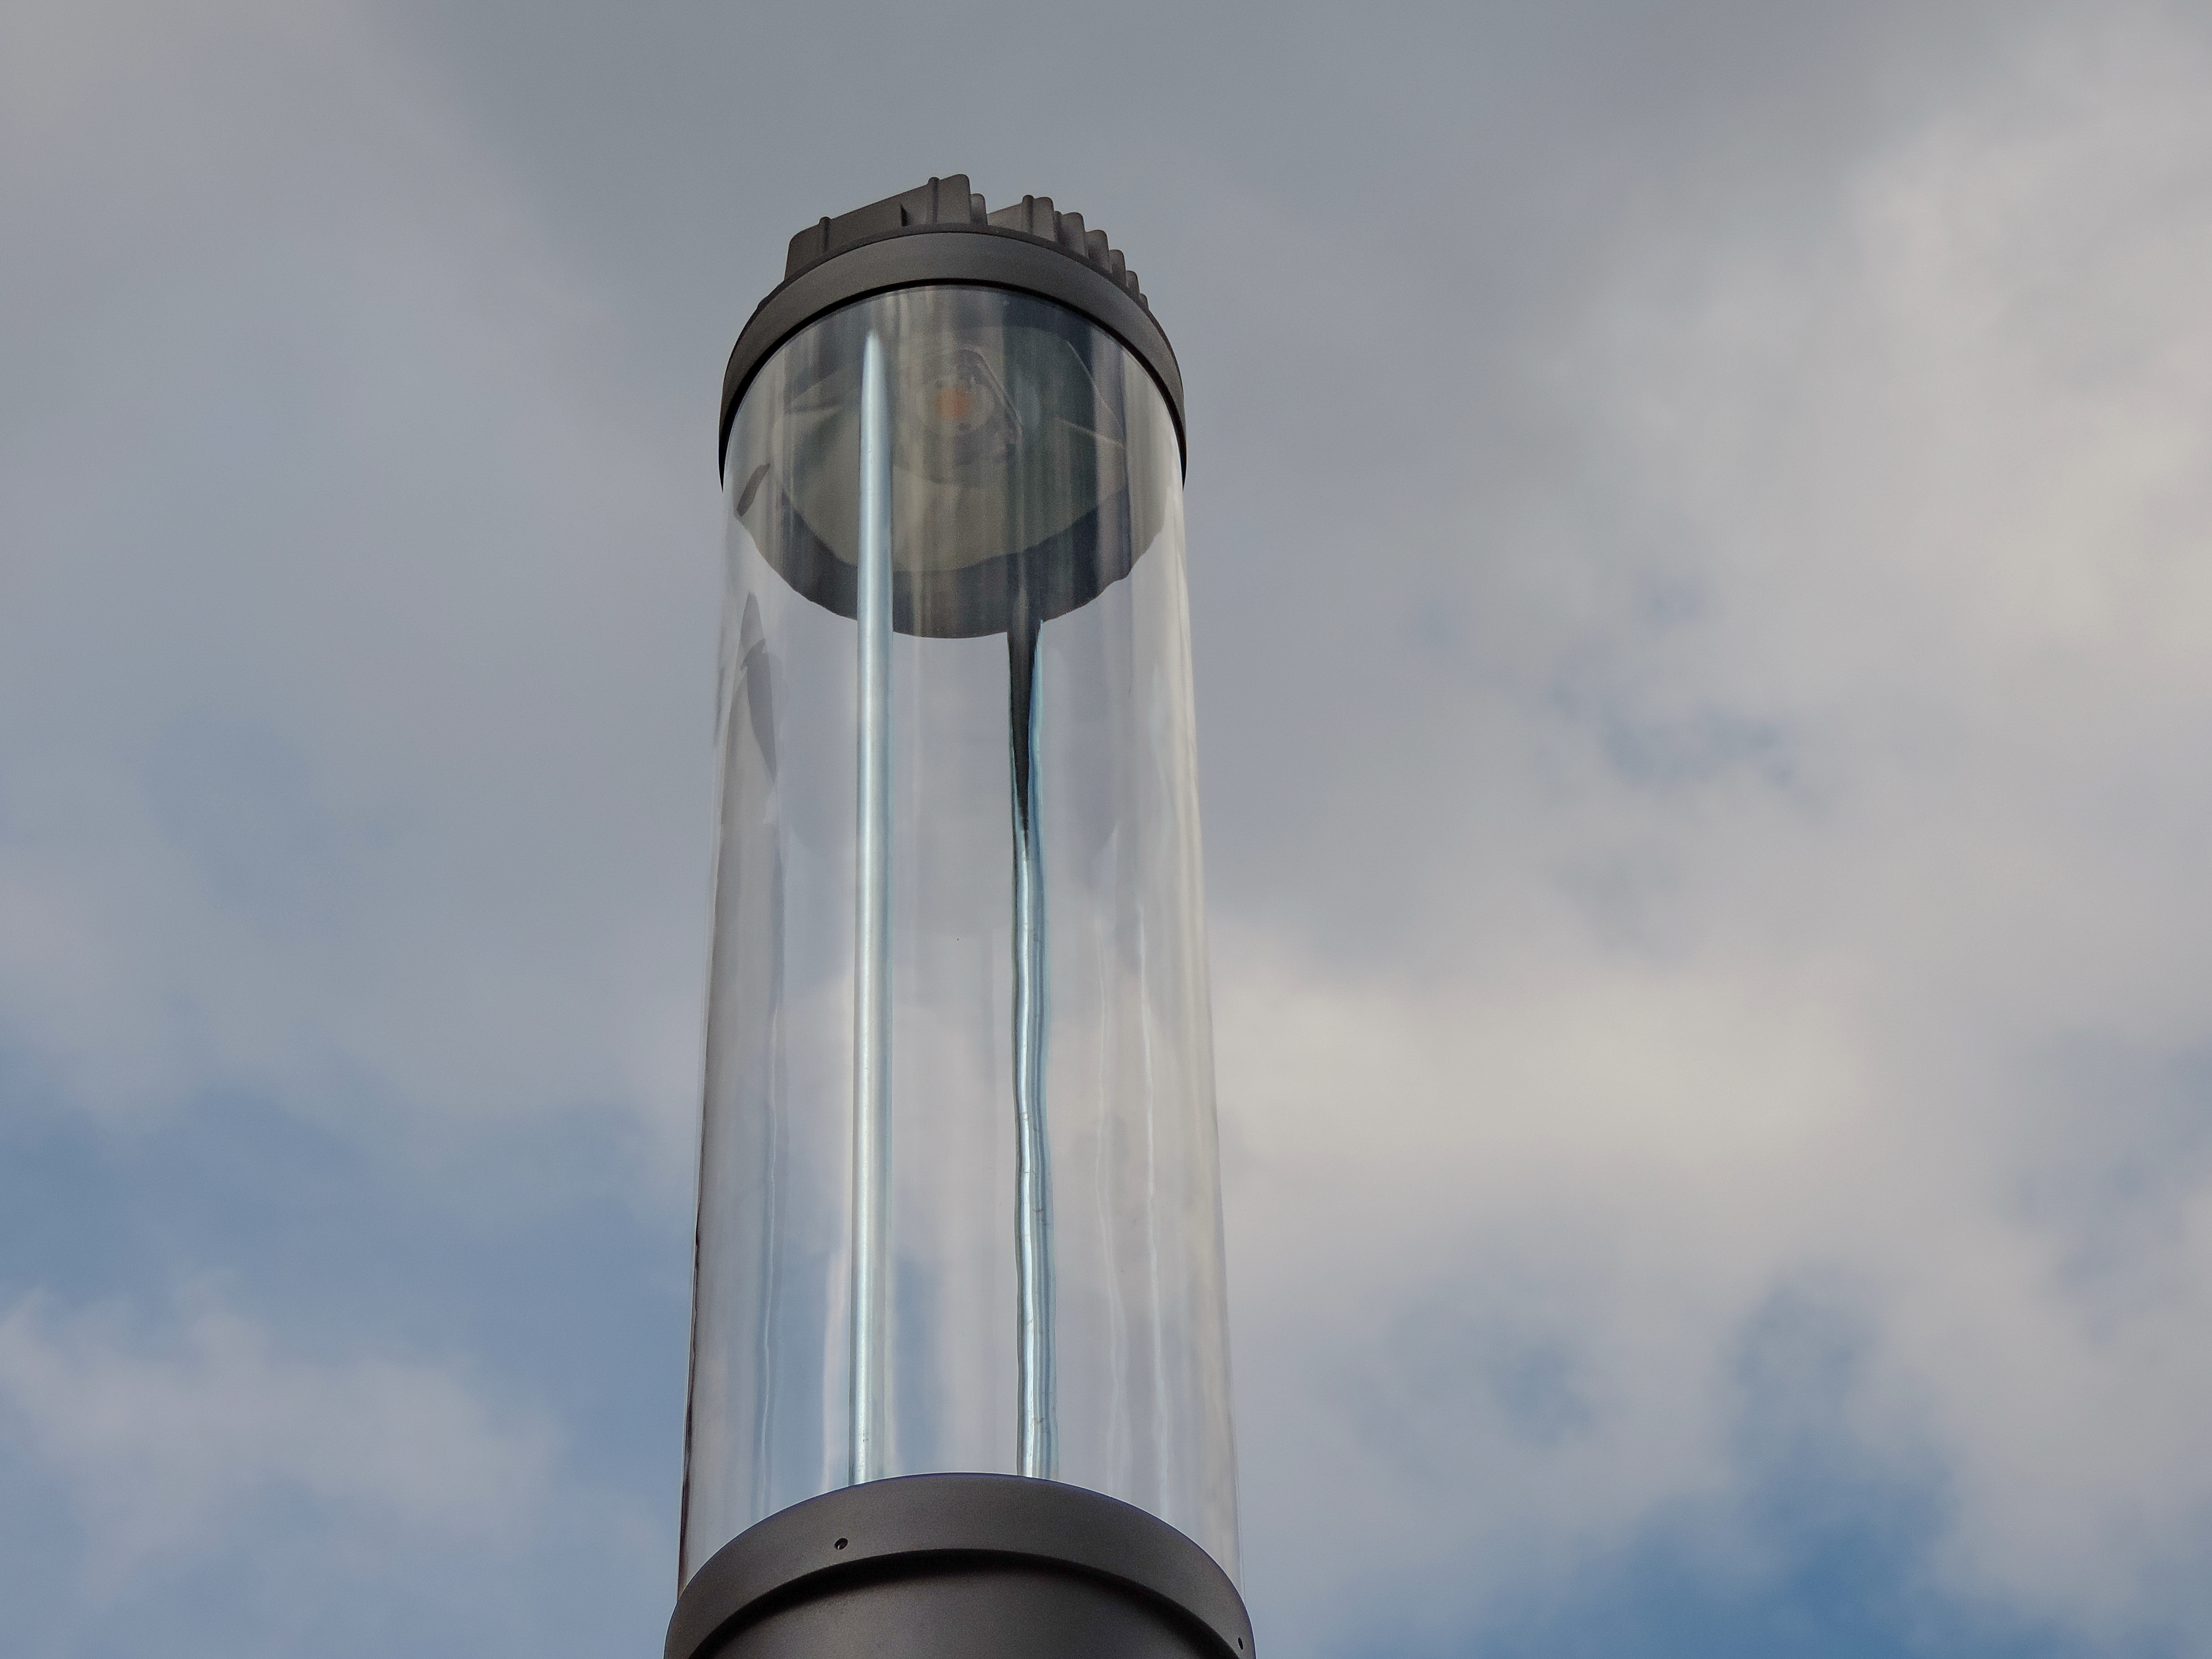 N воздуха и стекла. Воздушный стеклянный колокол. Фильтр воздушный стеклянный. Фонарь верхнего света в архитектуре виды.